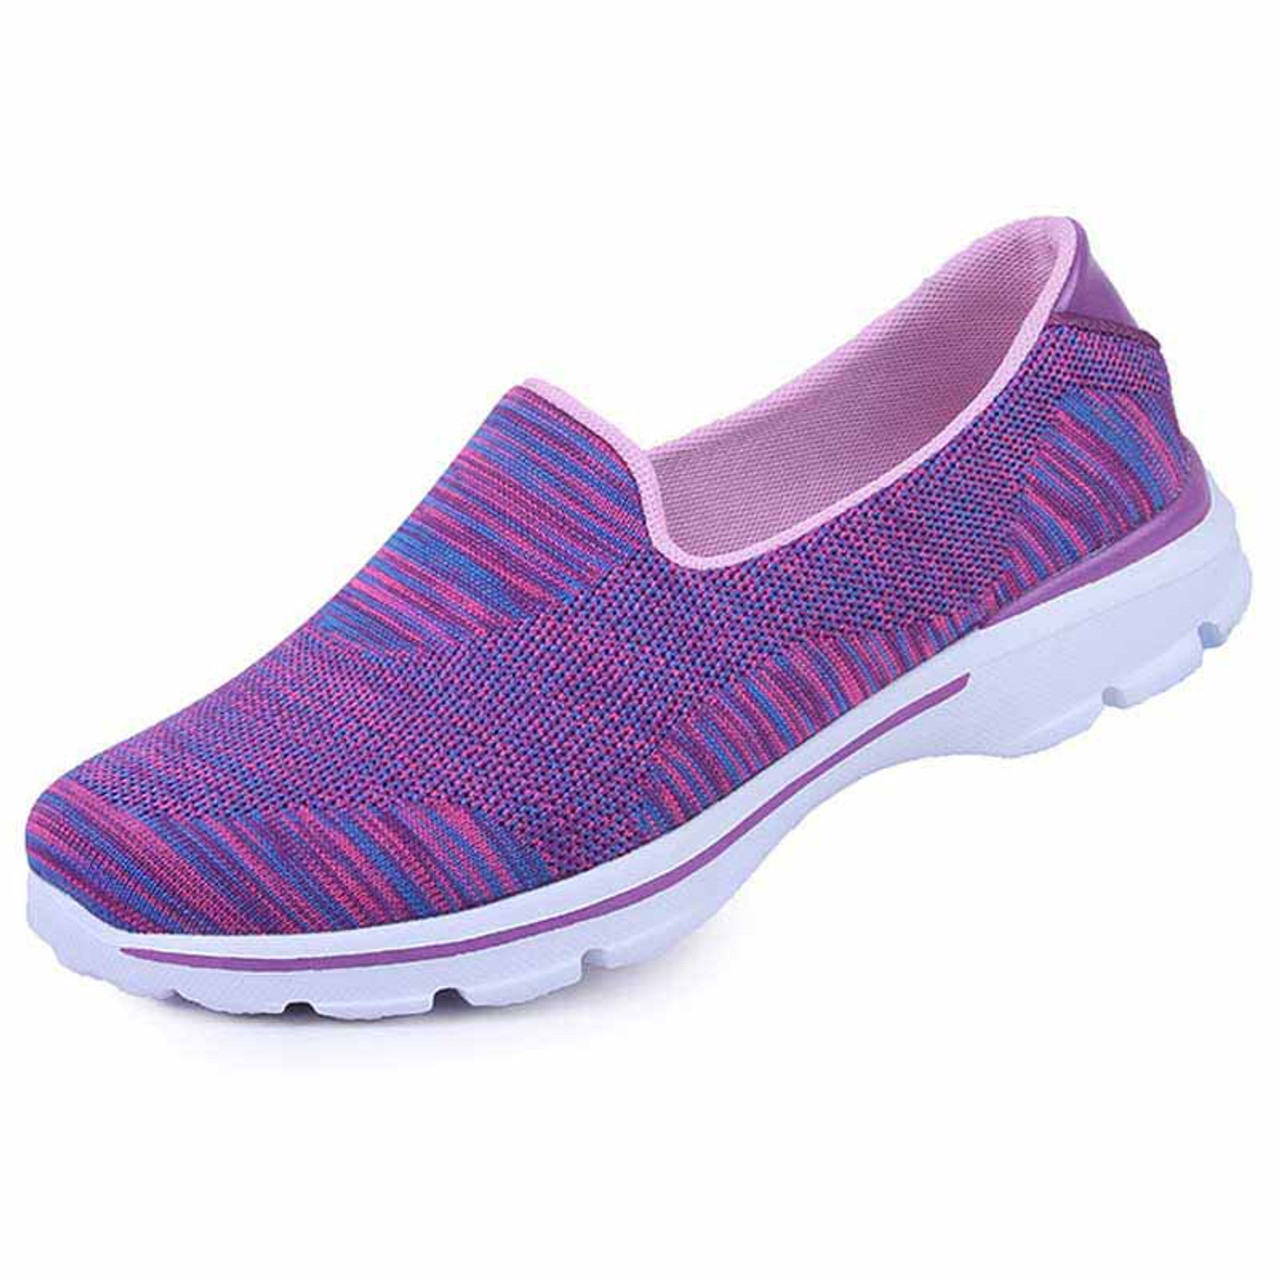 Purple stripe pattern flyknit slip on shoe sneaker | Womens sneakers ...